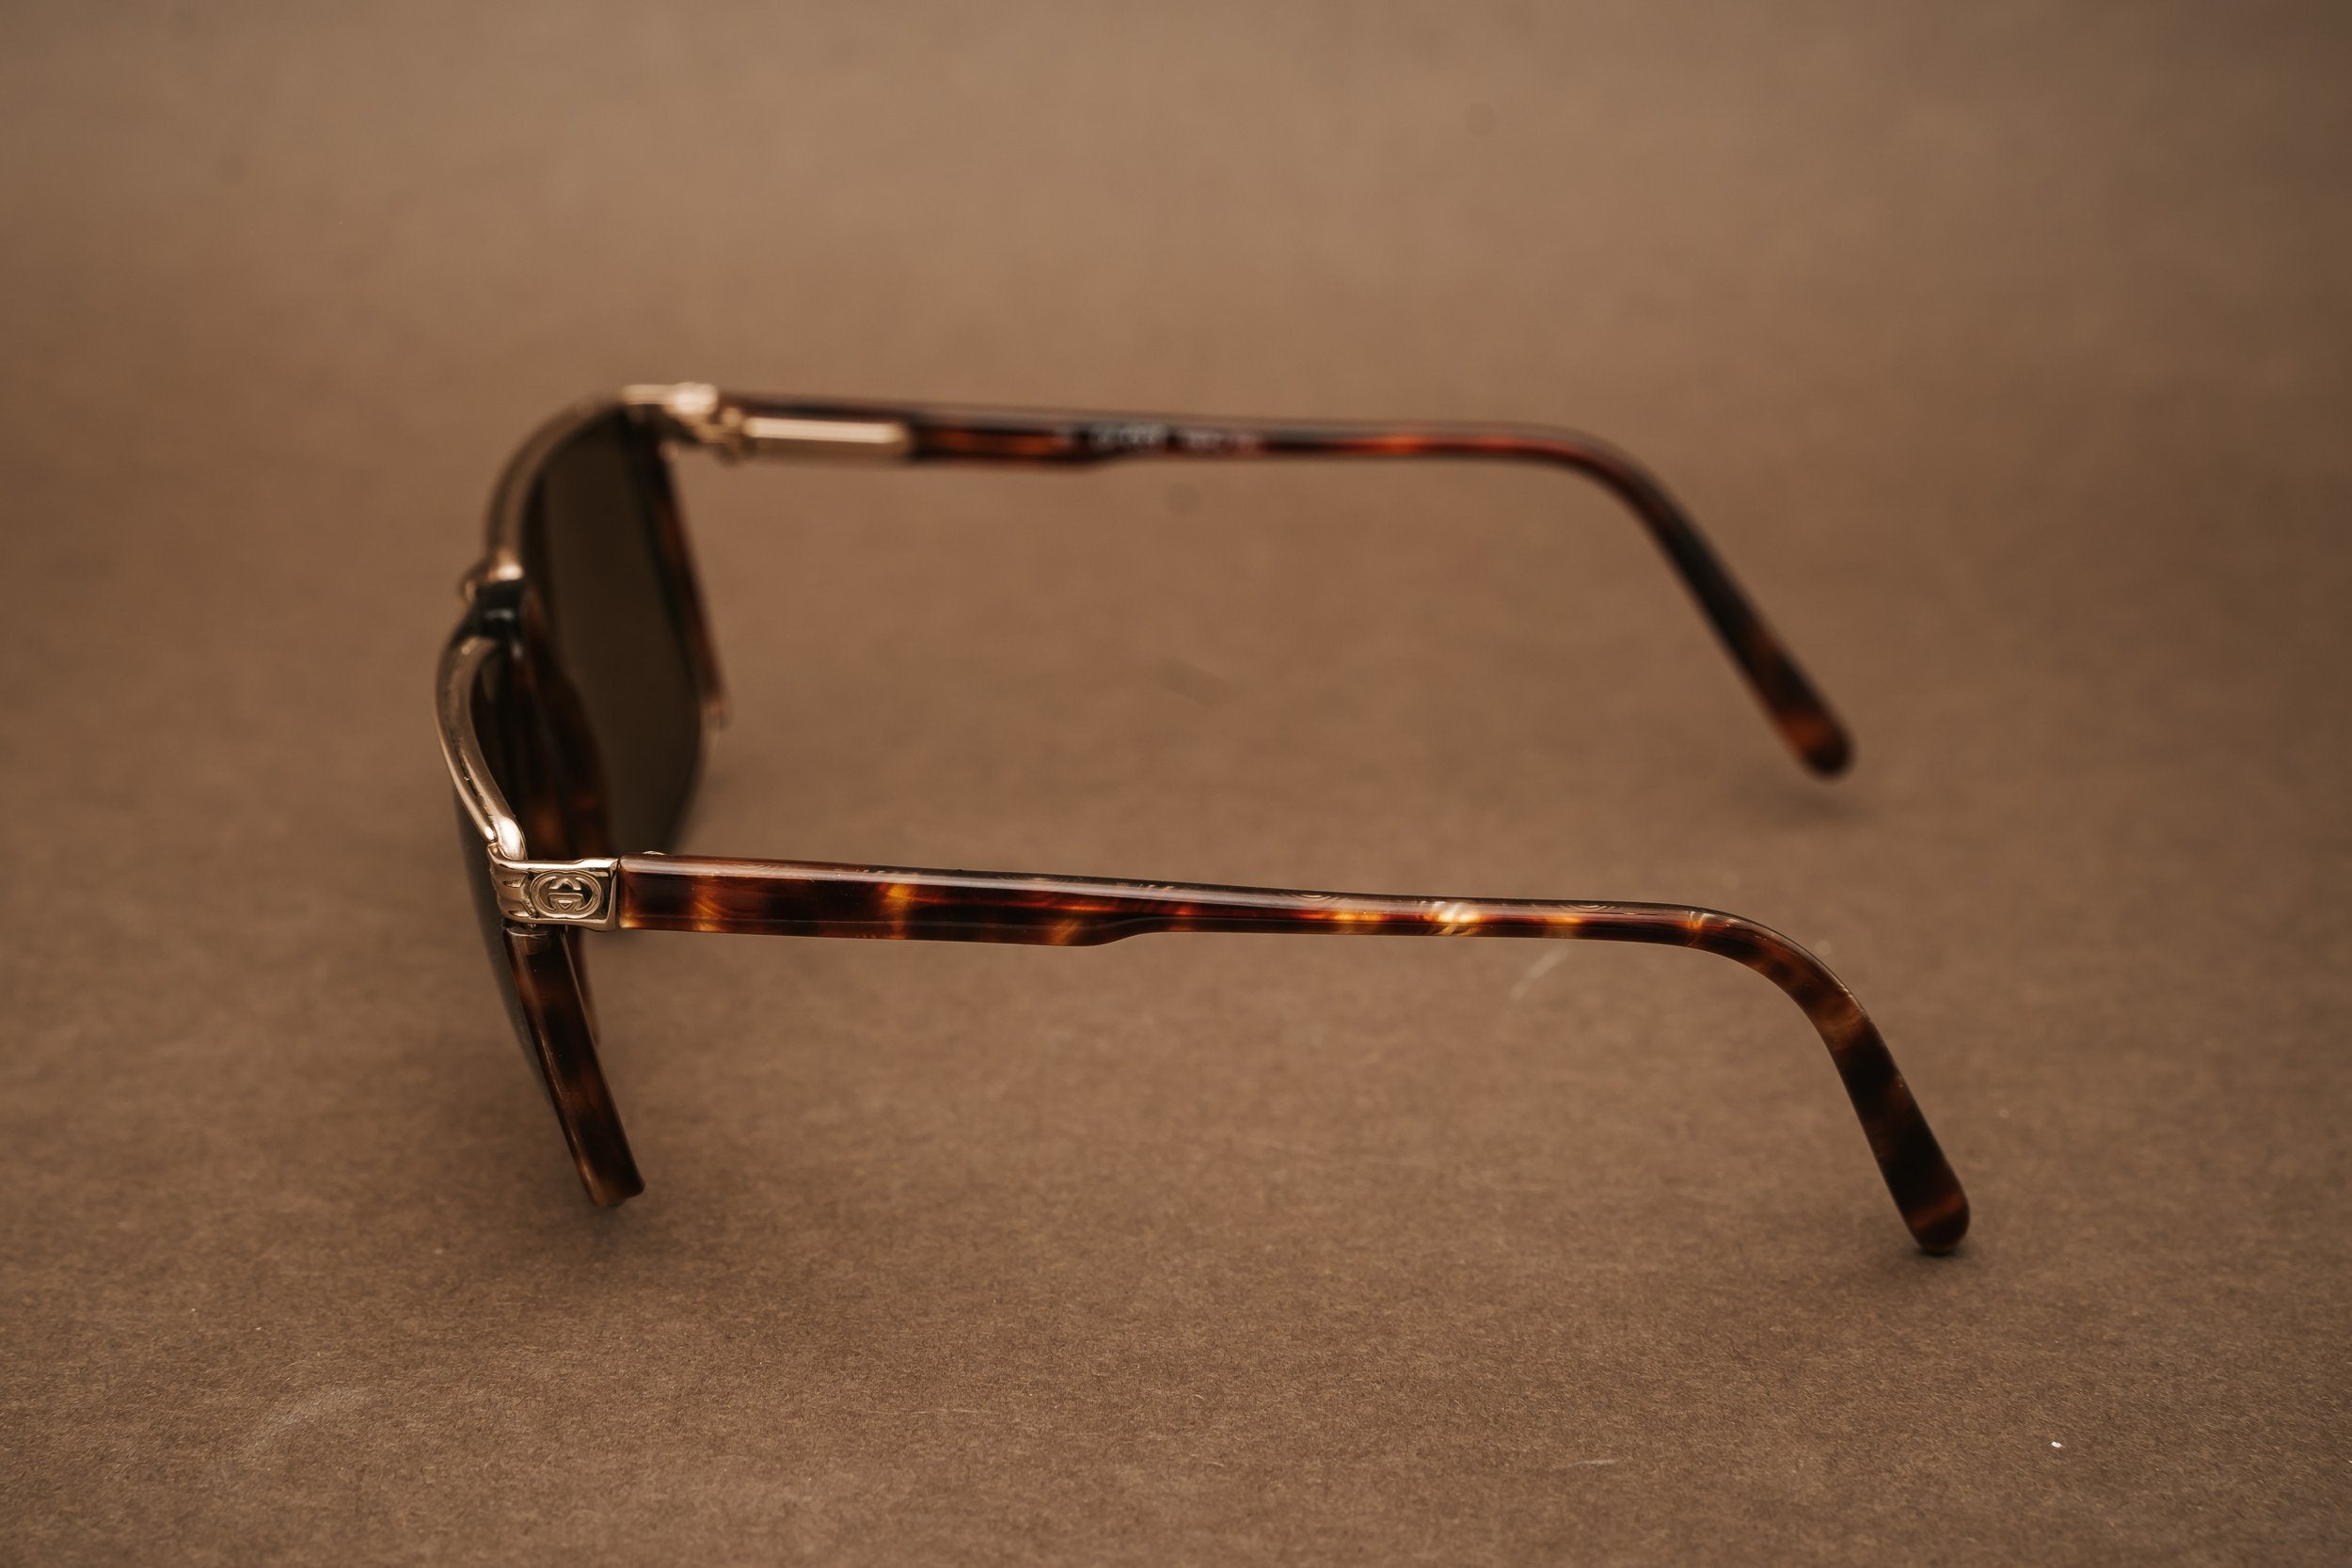 Gucci GG2300 sunglasses